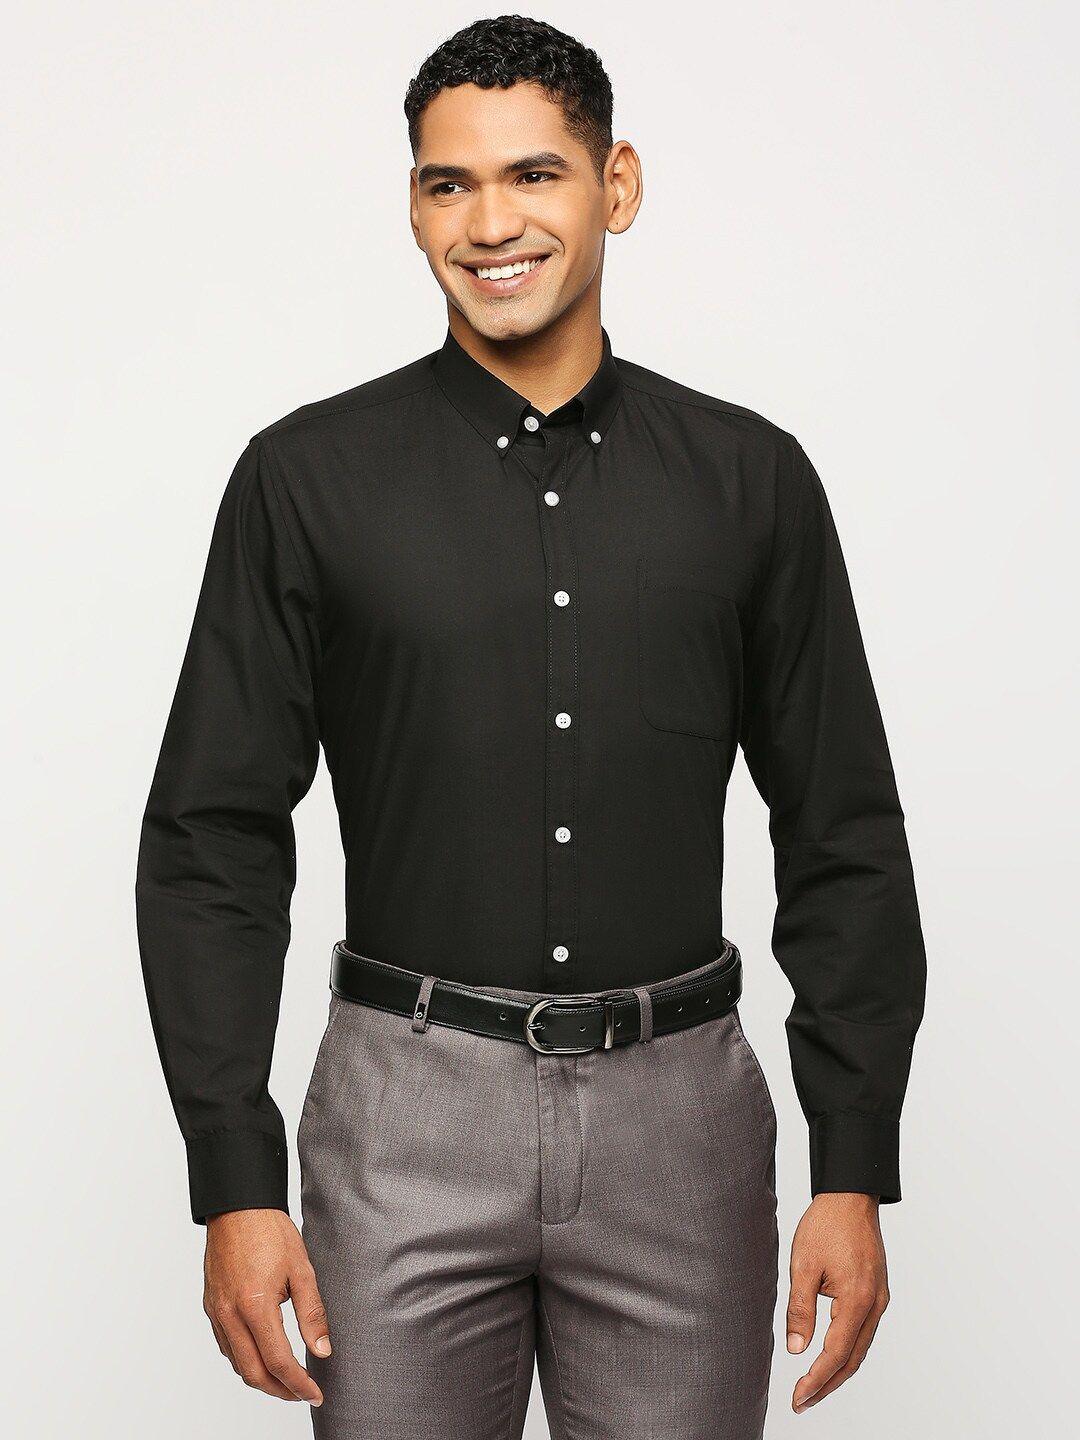 solemio men black classic opaque formal shirt